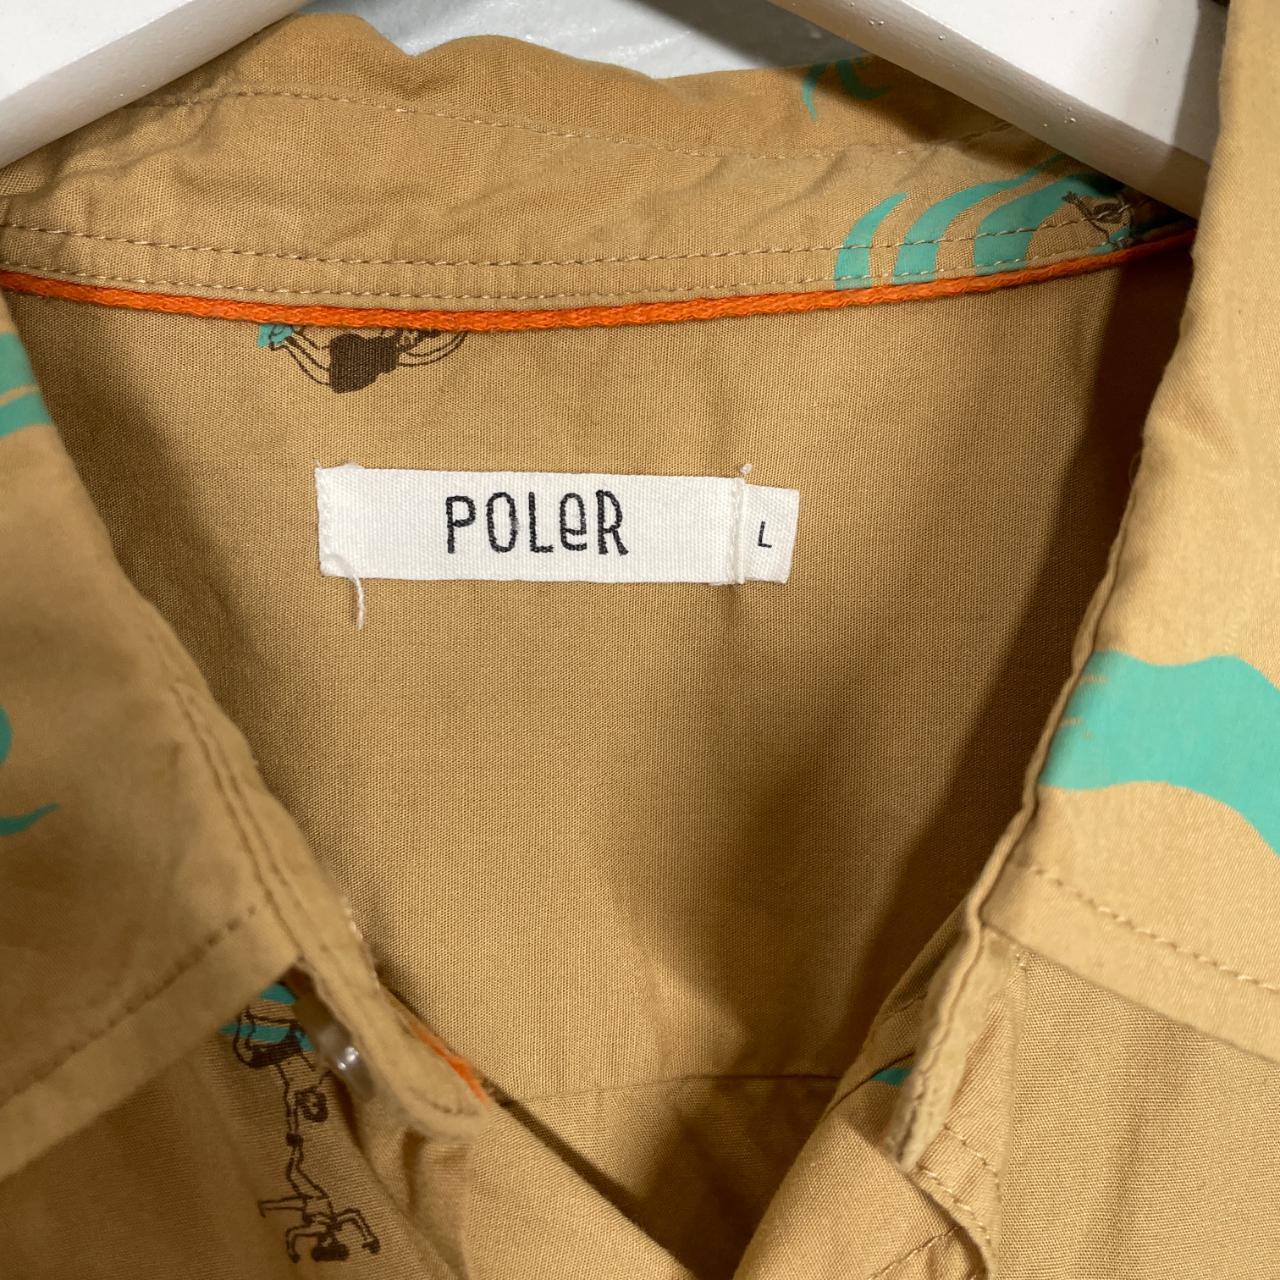 Product Image 2 - Poler Size L 

Tan shirt